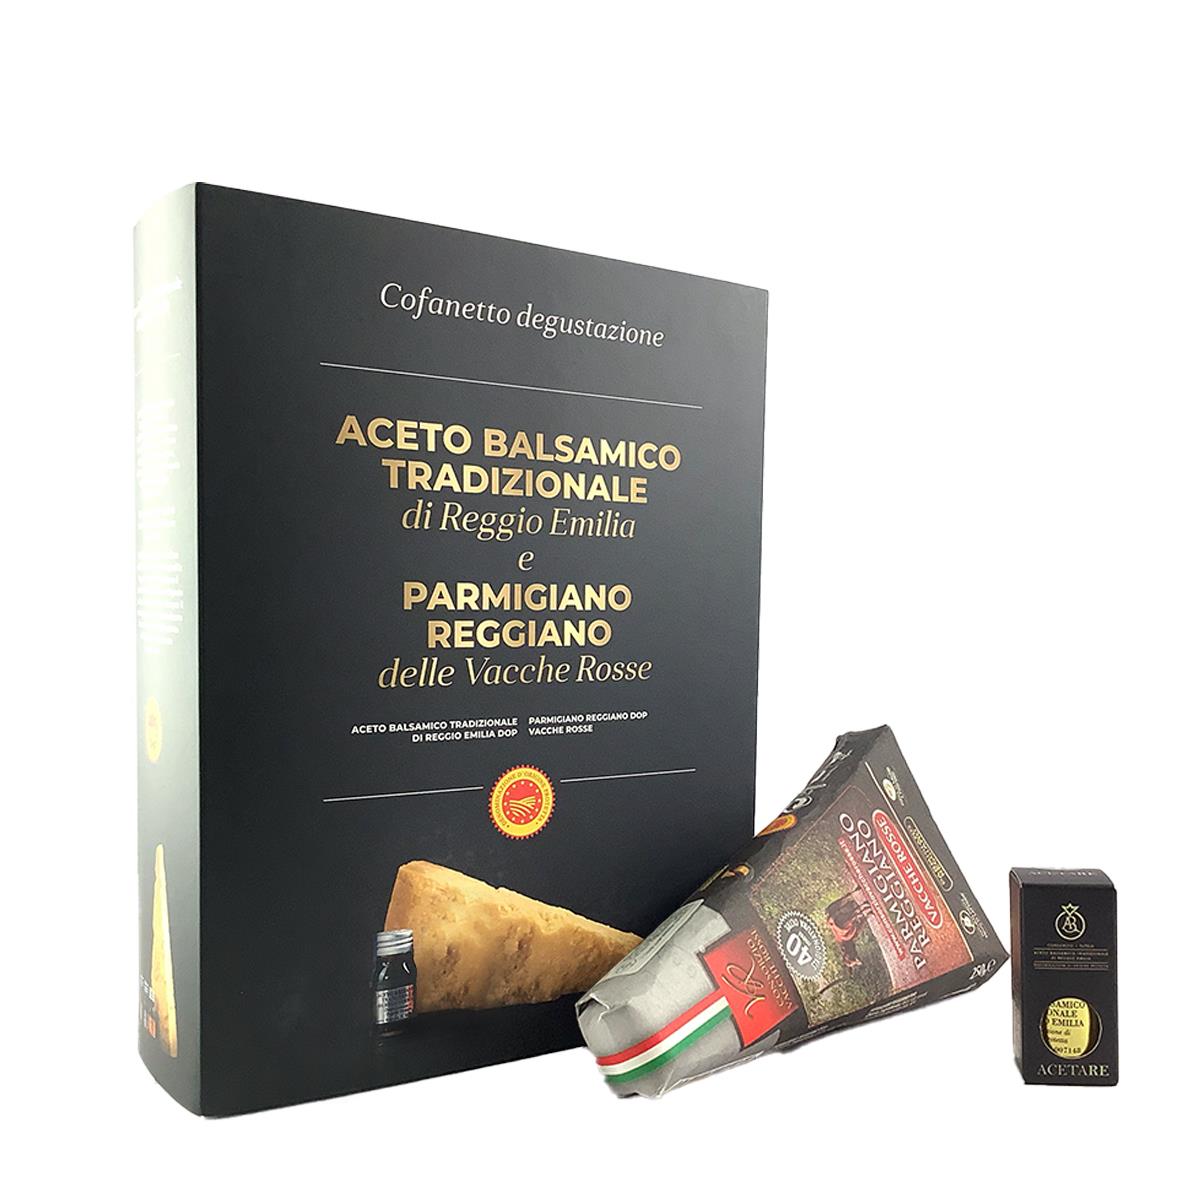 Boîte de Parmigiano Reggiano Vacche Rosse 40 mois et vinaigre balsamique qualité Reggio Emilia Gold